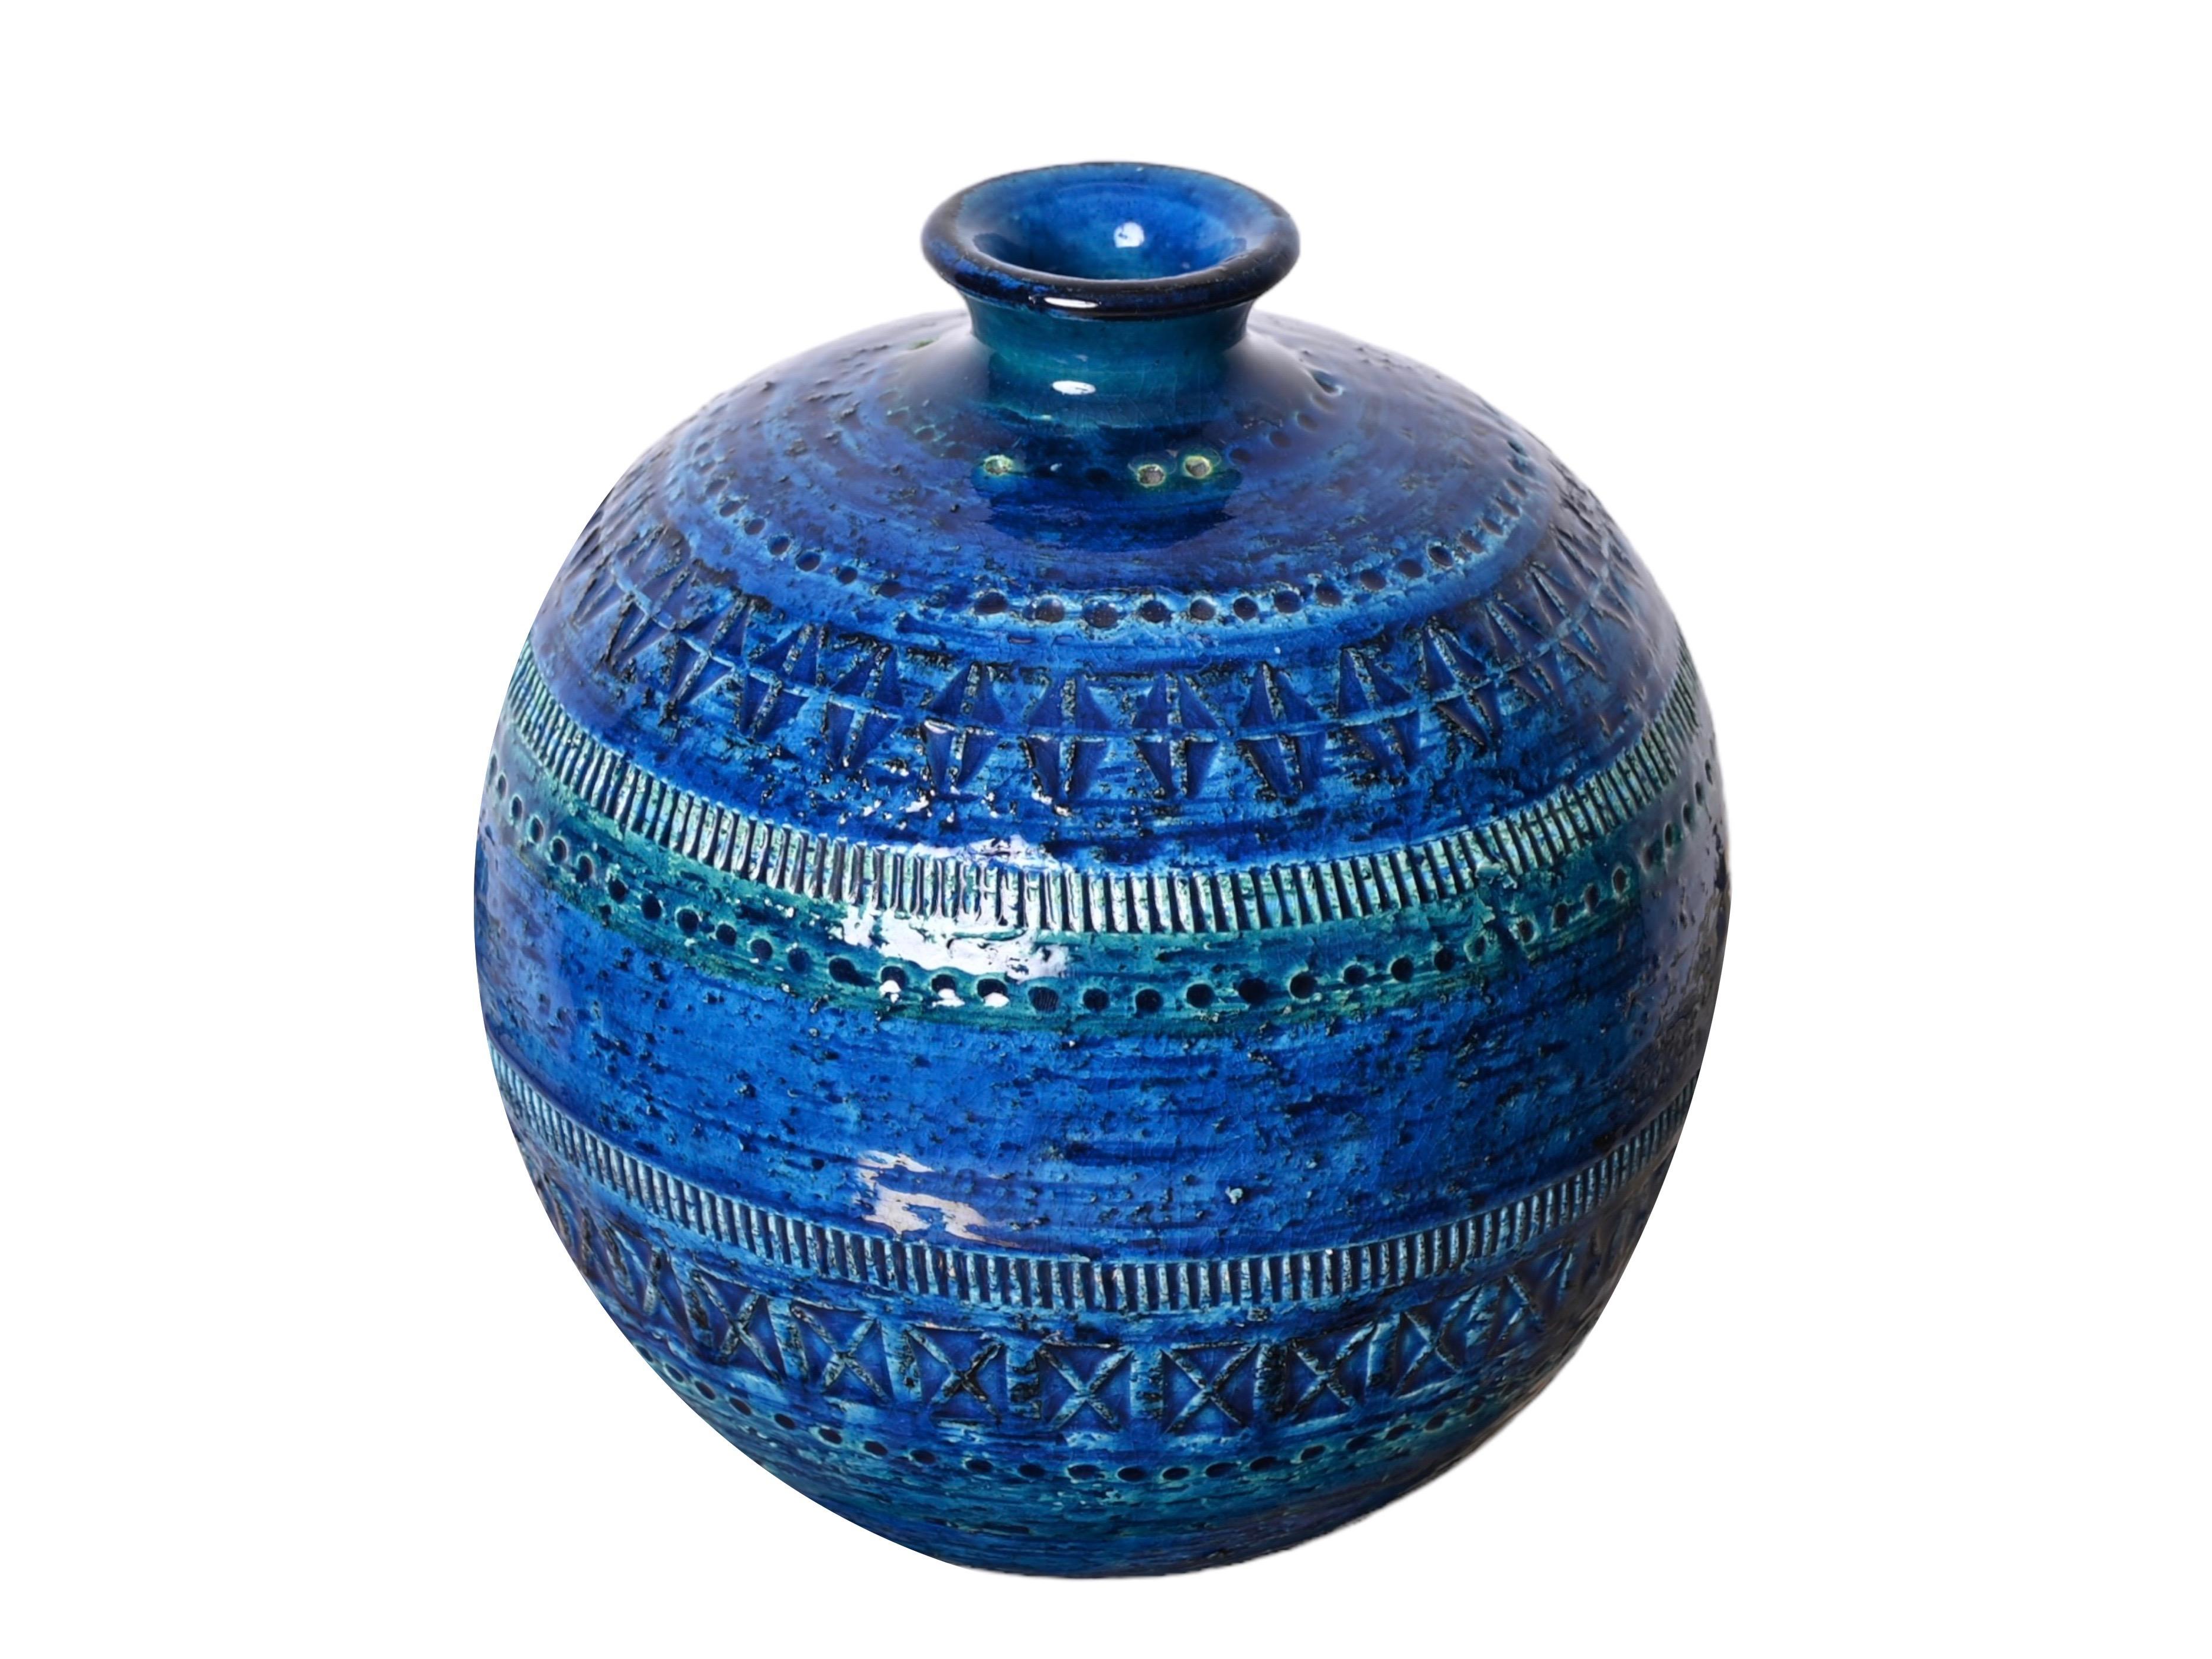 Aldo Londi Terracotta Ceramic Rimini Blue Vase for Bitossi, Italy, 1960s For Sale 7